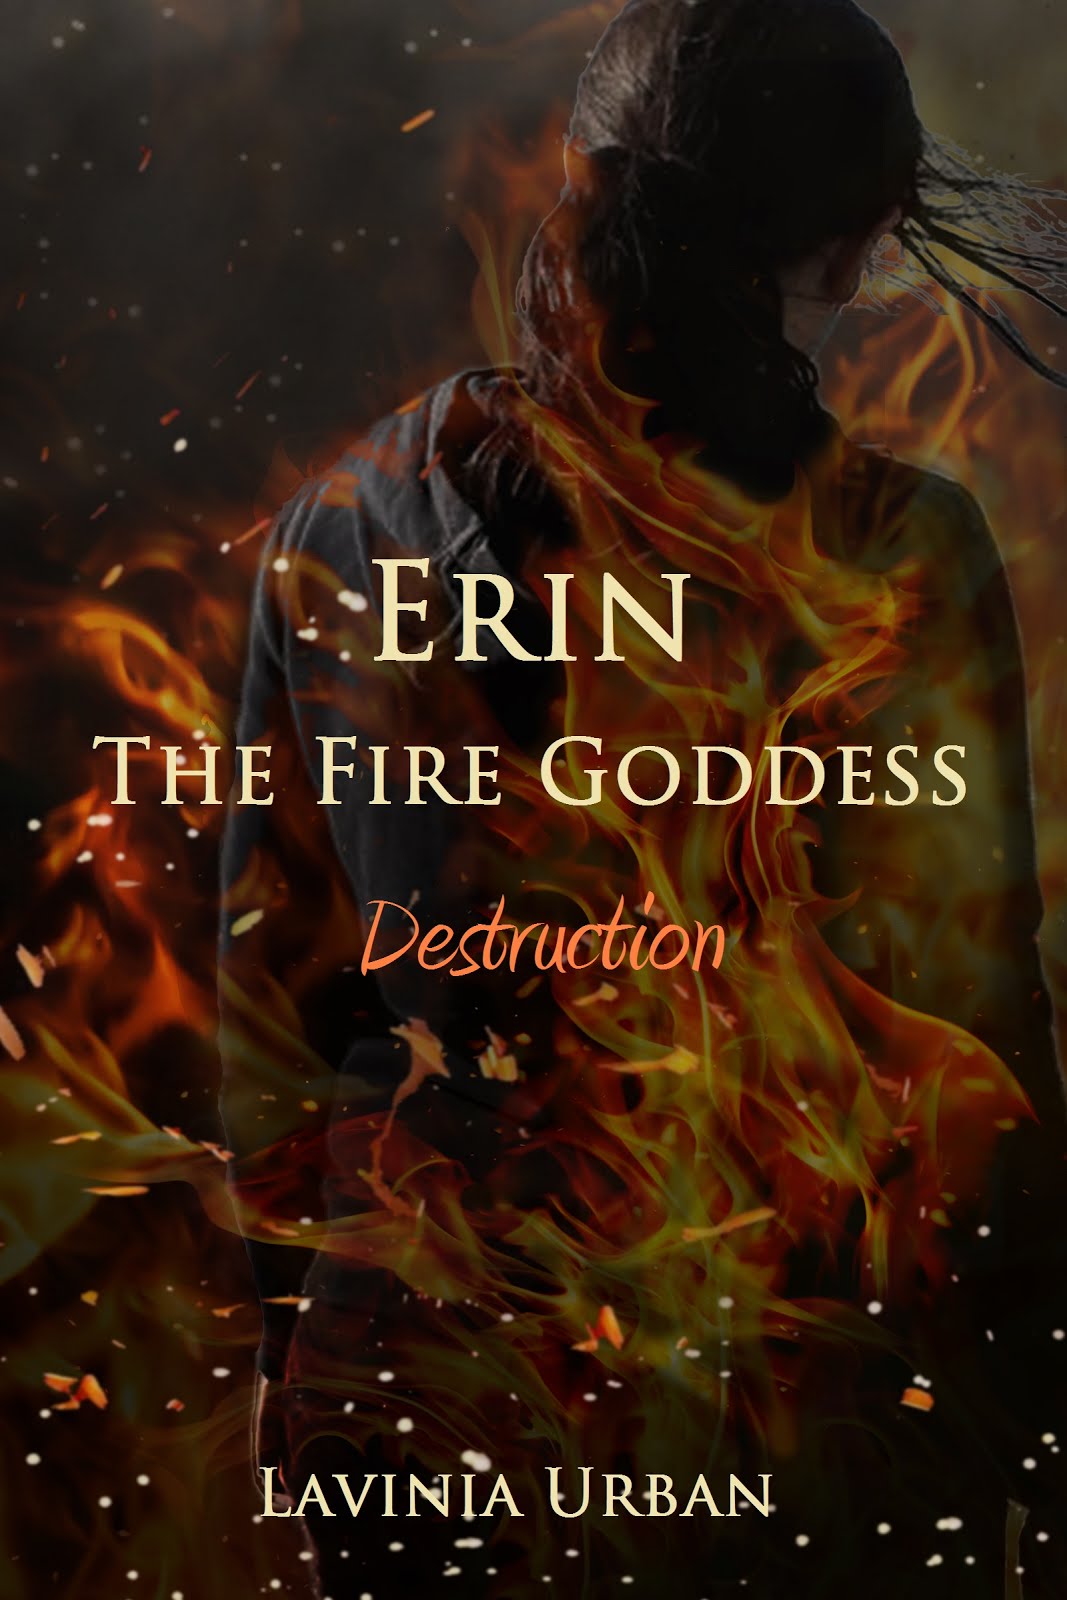 Erin the Fire Goddess: Destruction